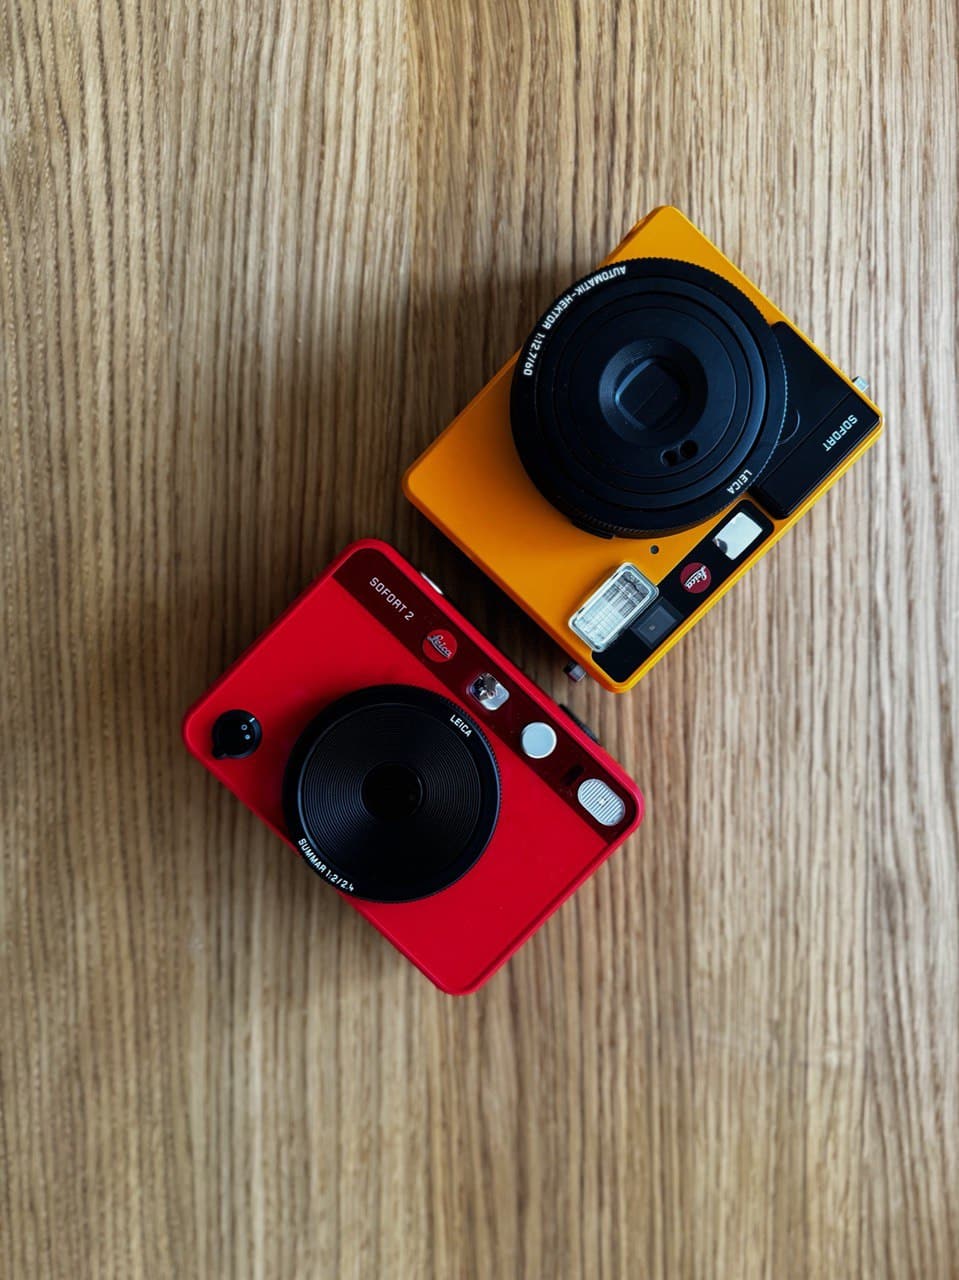 Die Leica Sofort 2 im Vergleich zur Leica Sofort.